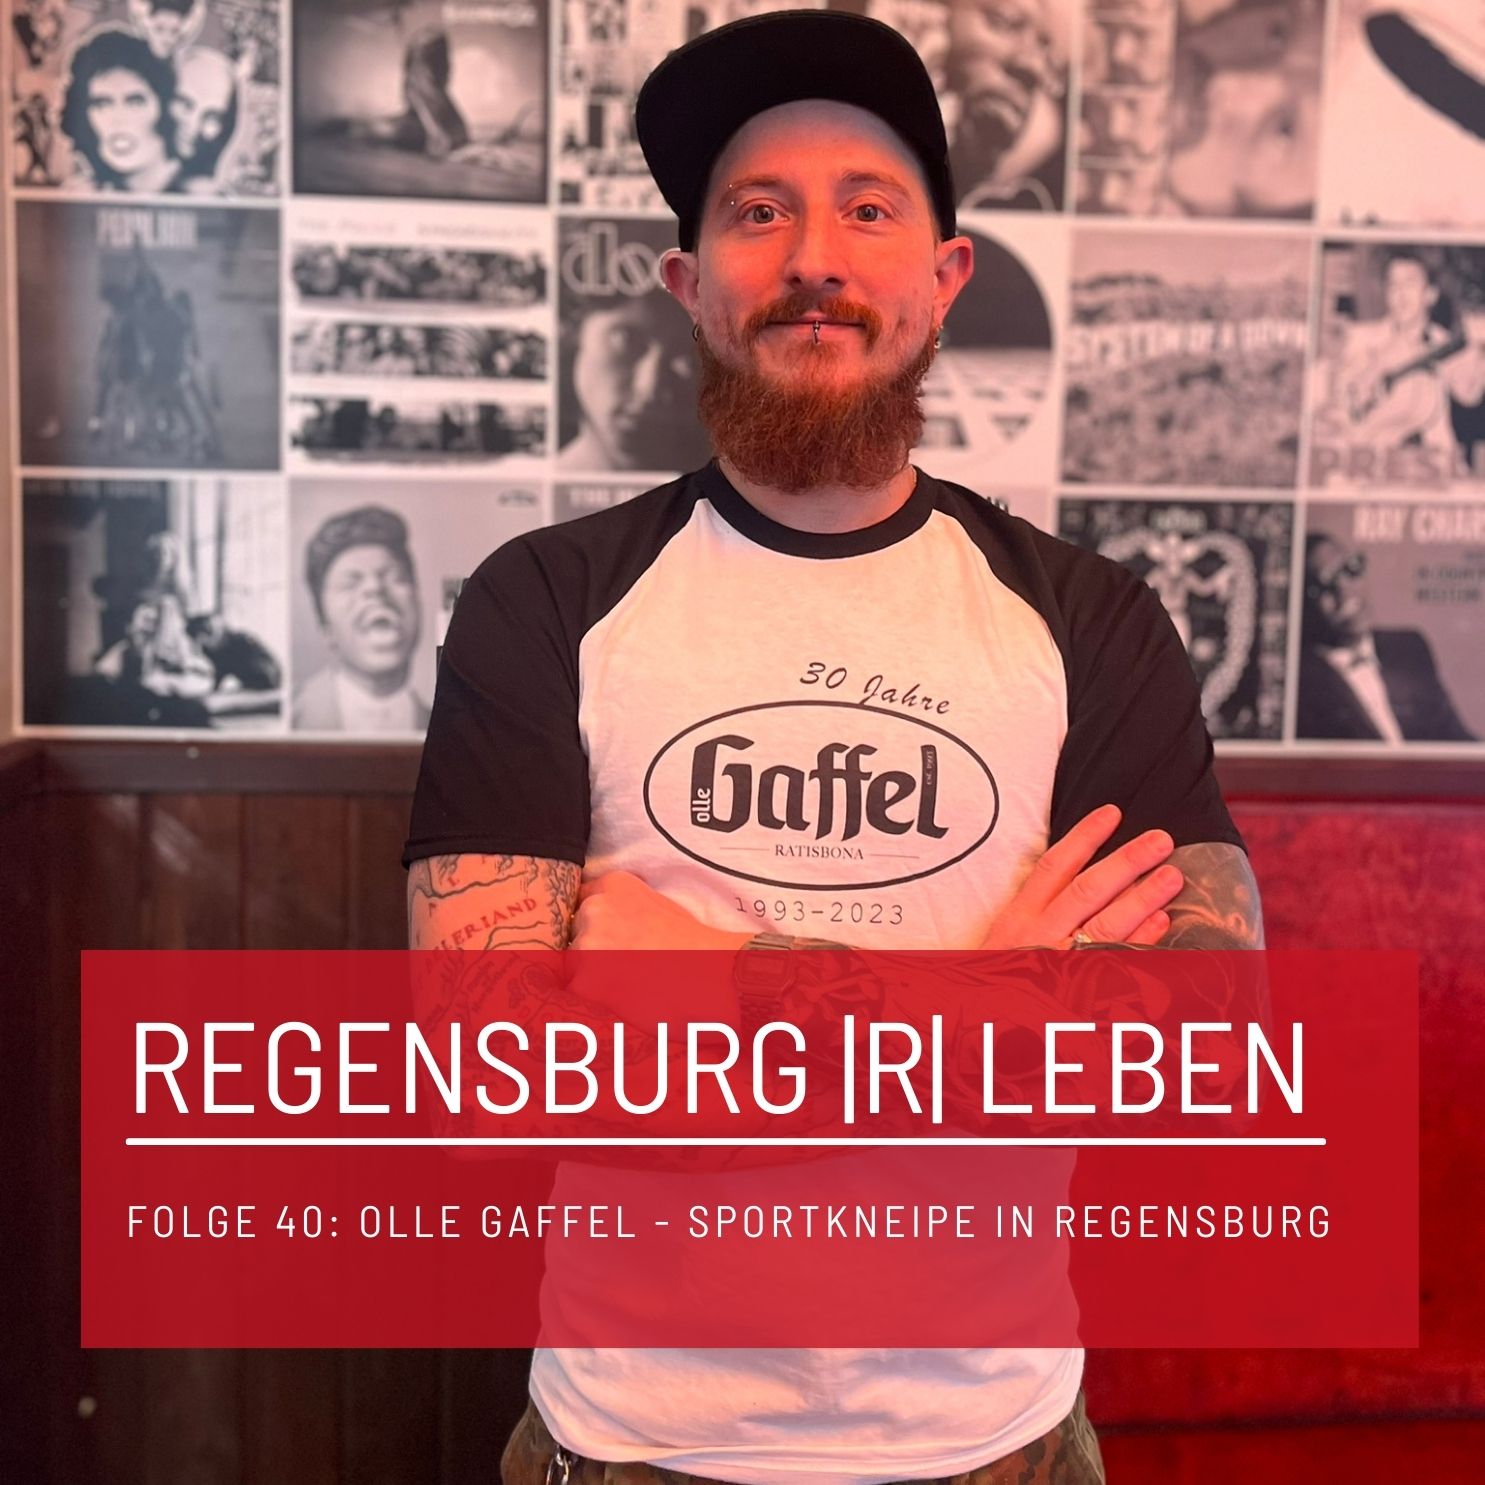 REGENSBURG |R| LEBEN - Folge 40 - Olle Gaffel